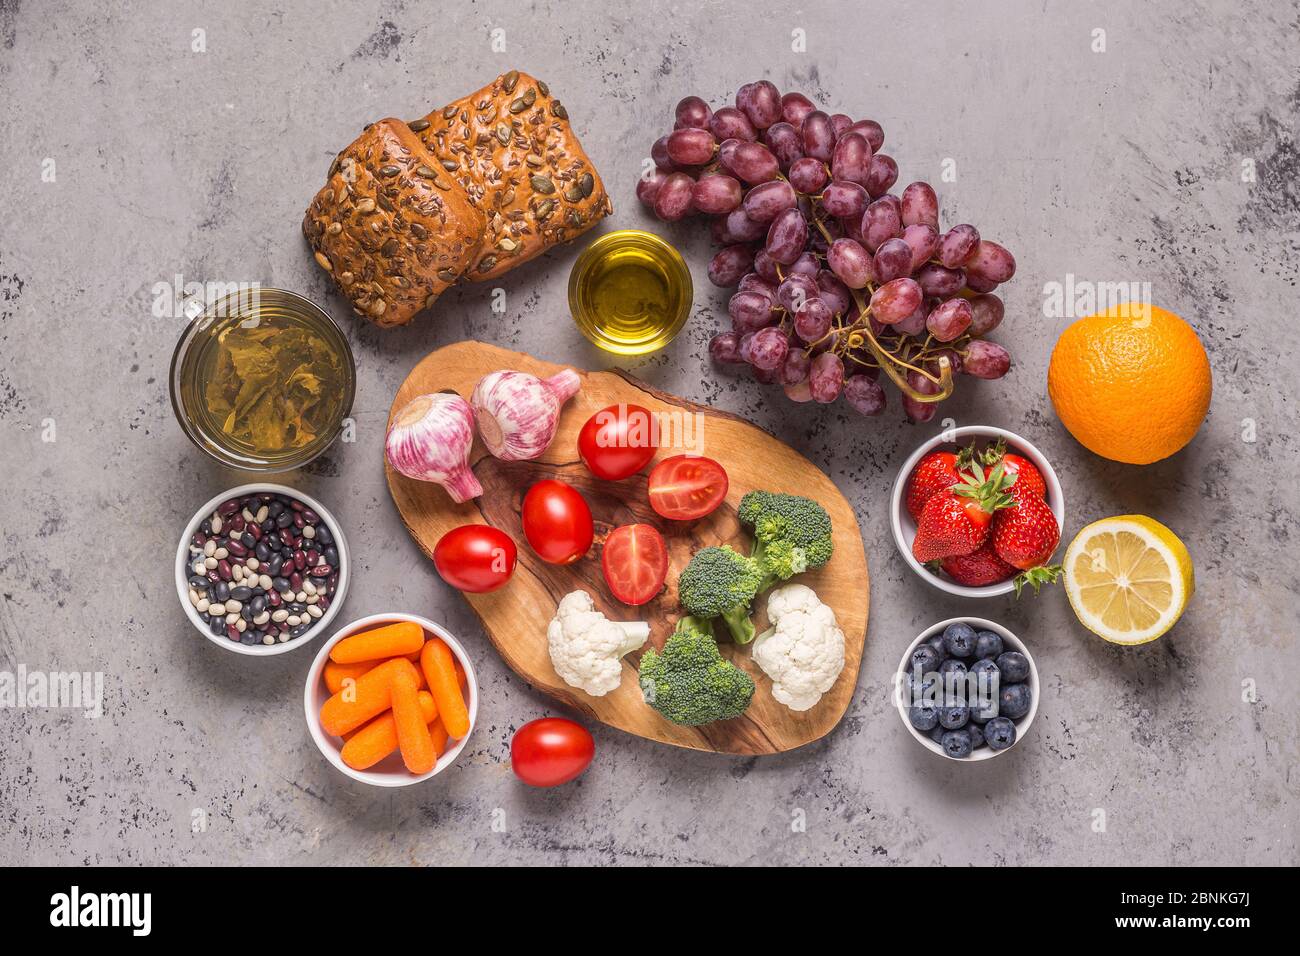 Lebensmittel, die das Risiko für Krebs senken könnten, Draufsicht. Stockfoto